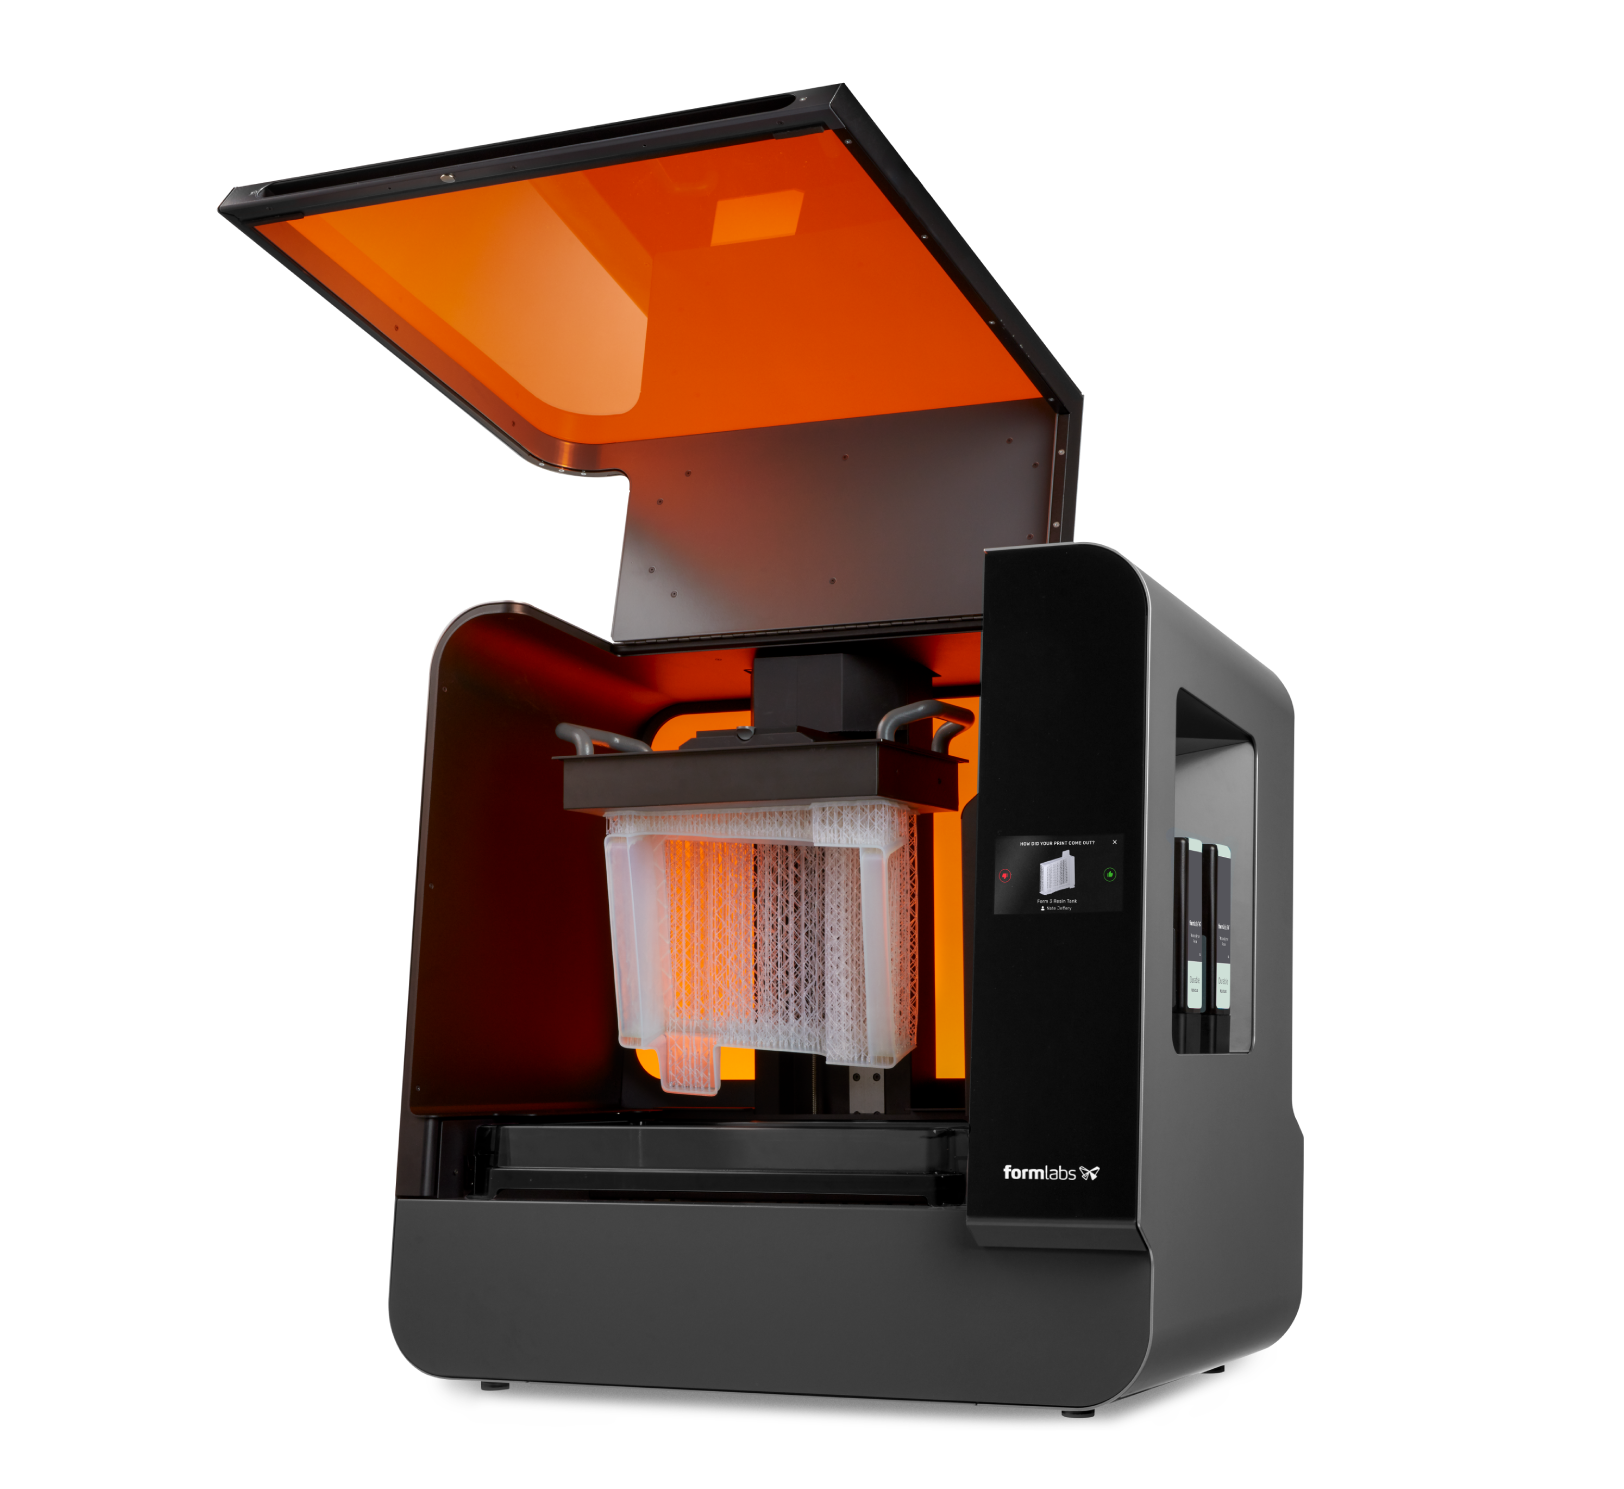 Form 3L 3D printing machine